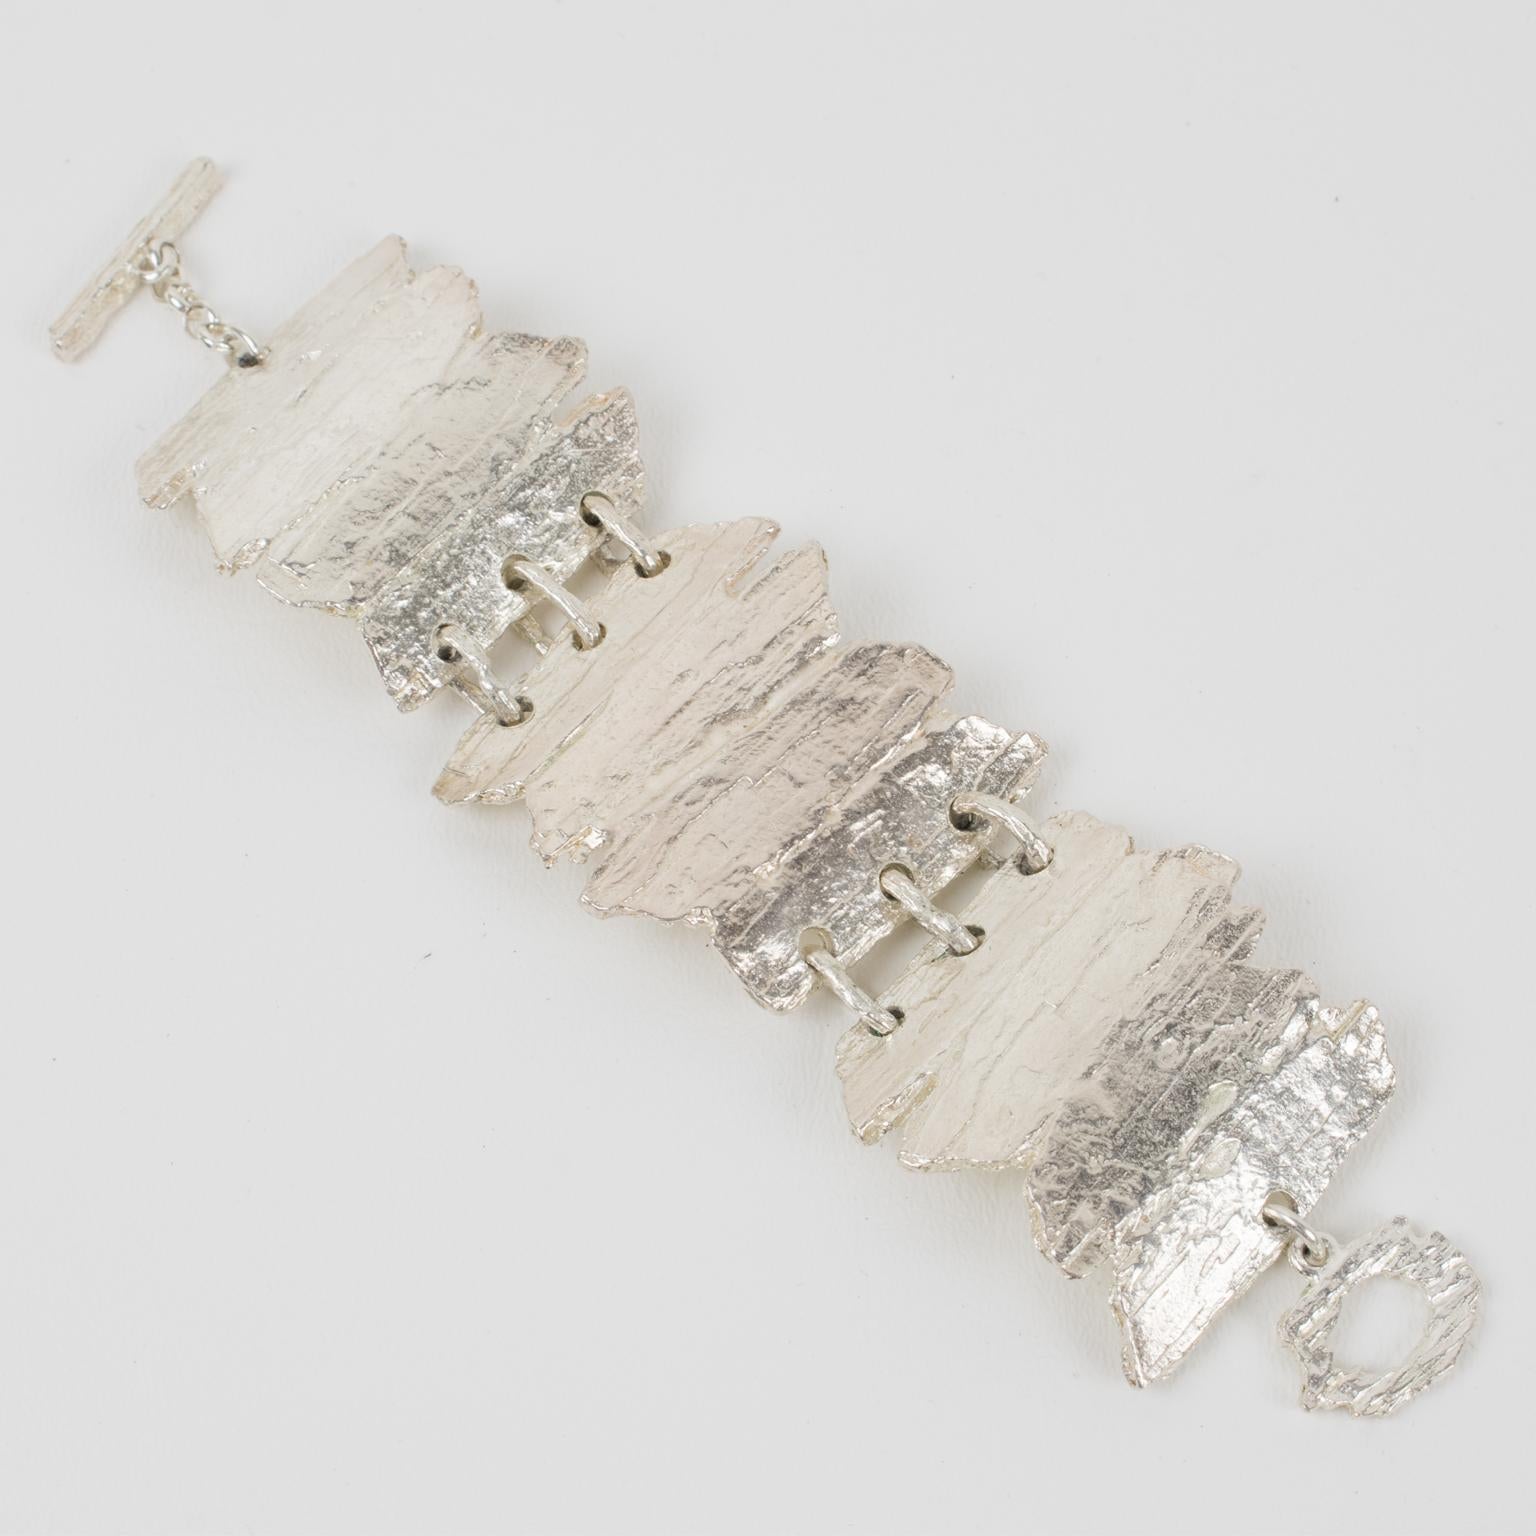 Dieses atemberaubende modernistische Gliederarmband aus Silberblech von Nelly Biche de Bere, Paris, besticht durch einen klobigen, übergroßen Armreif mit einem brutalistisch geschnitzten und handgefertigten Design. Das Design zeigt Treibholz mit